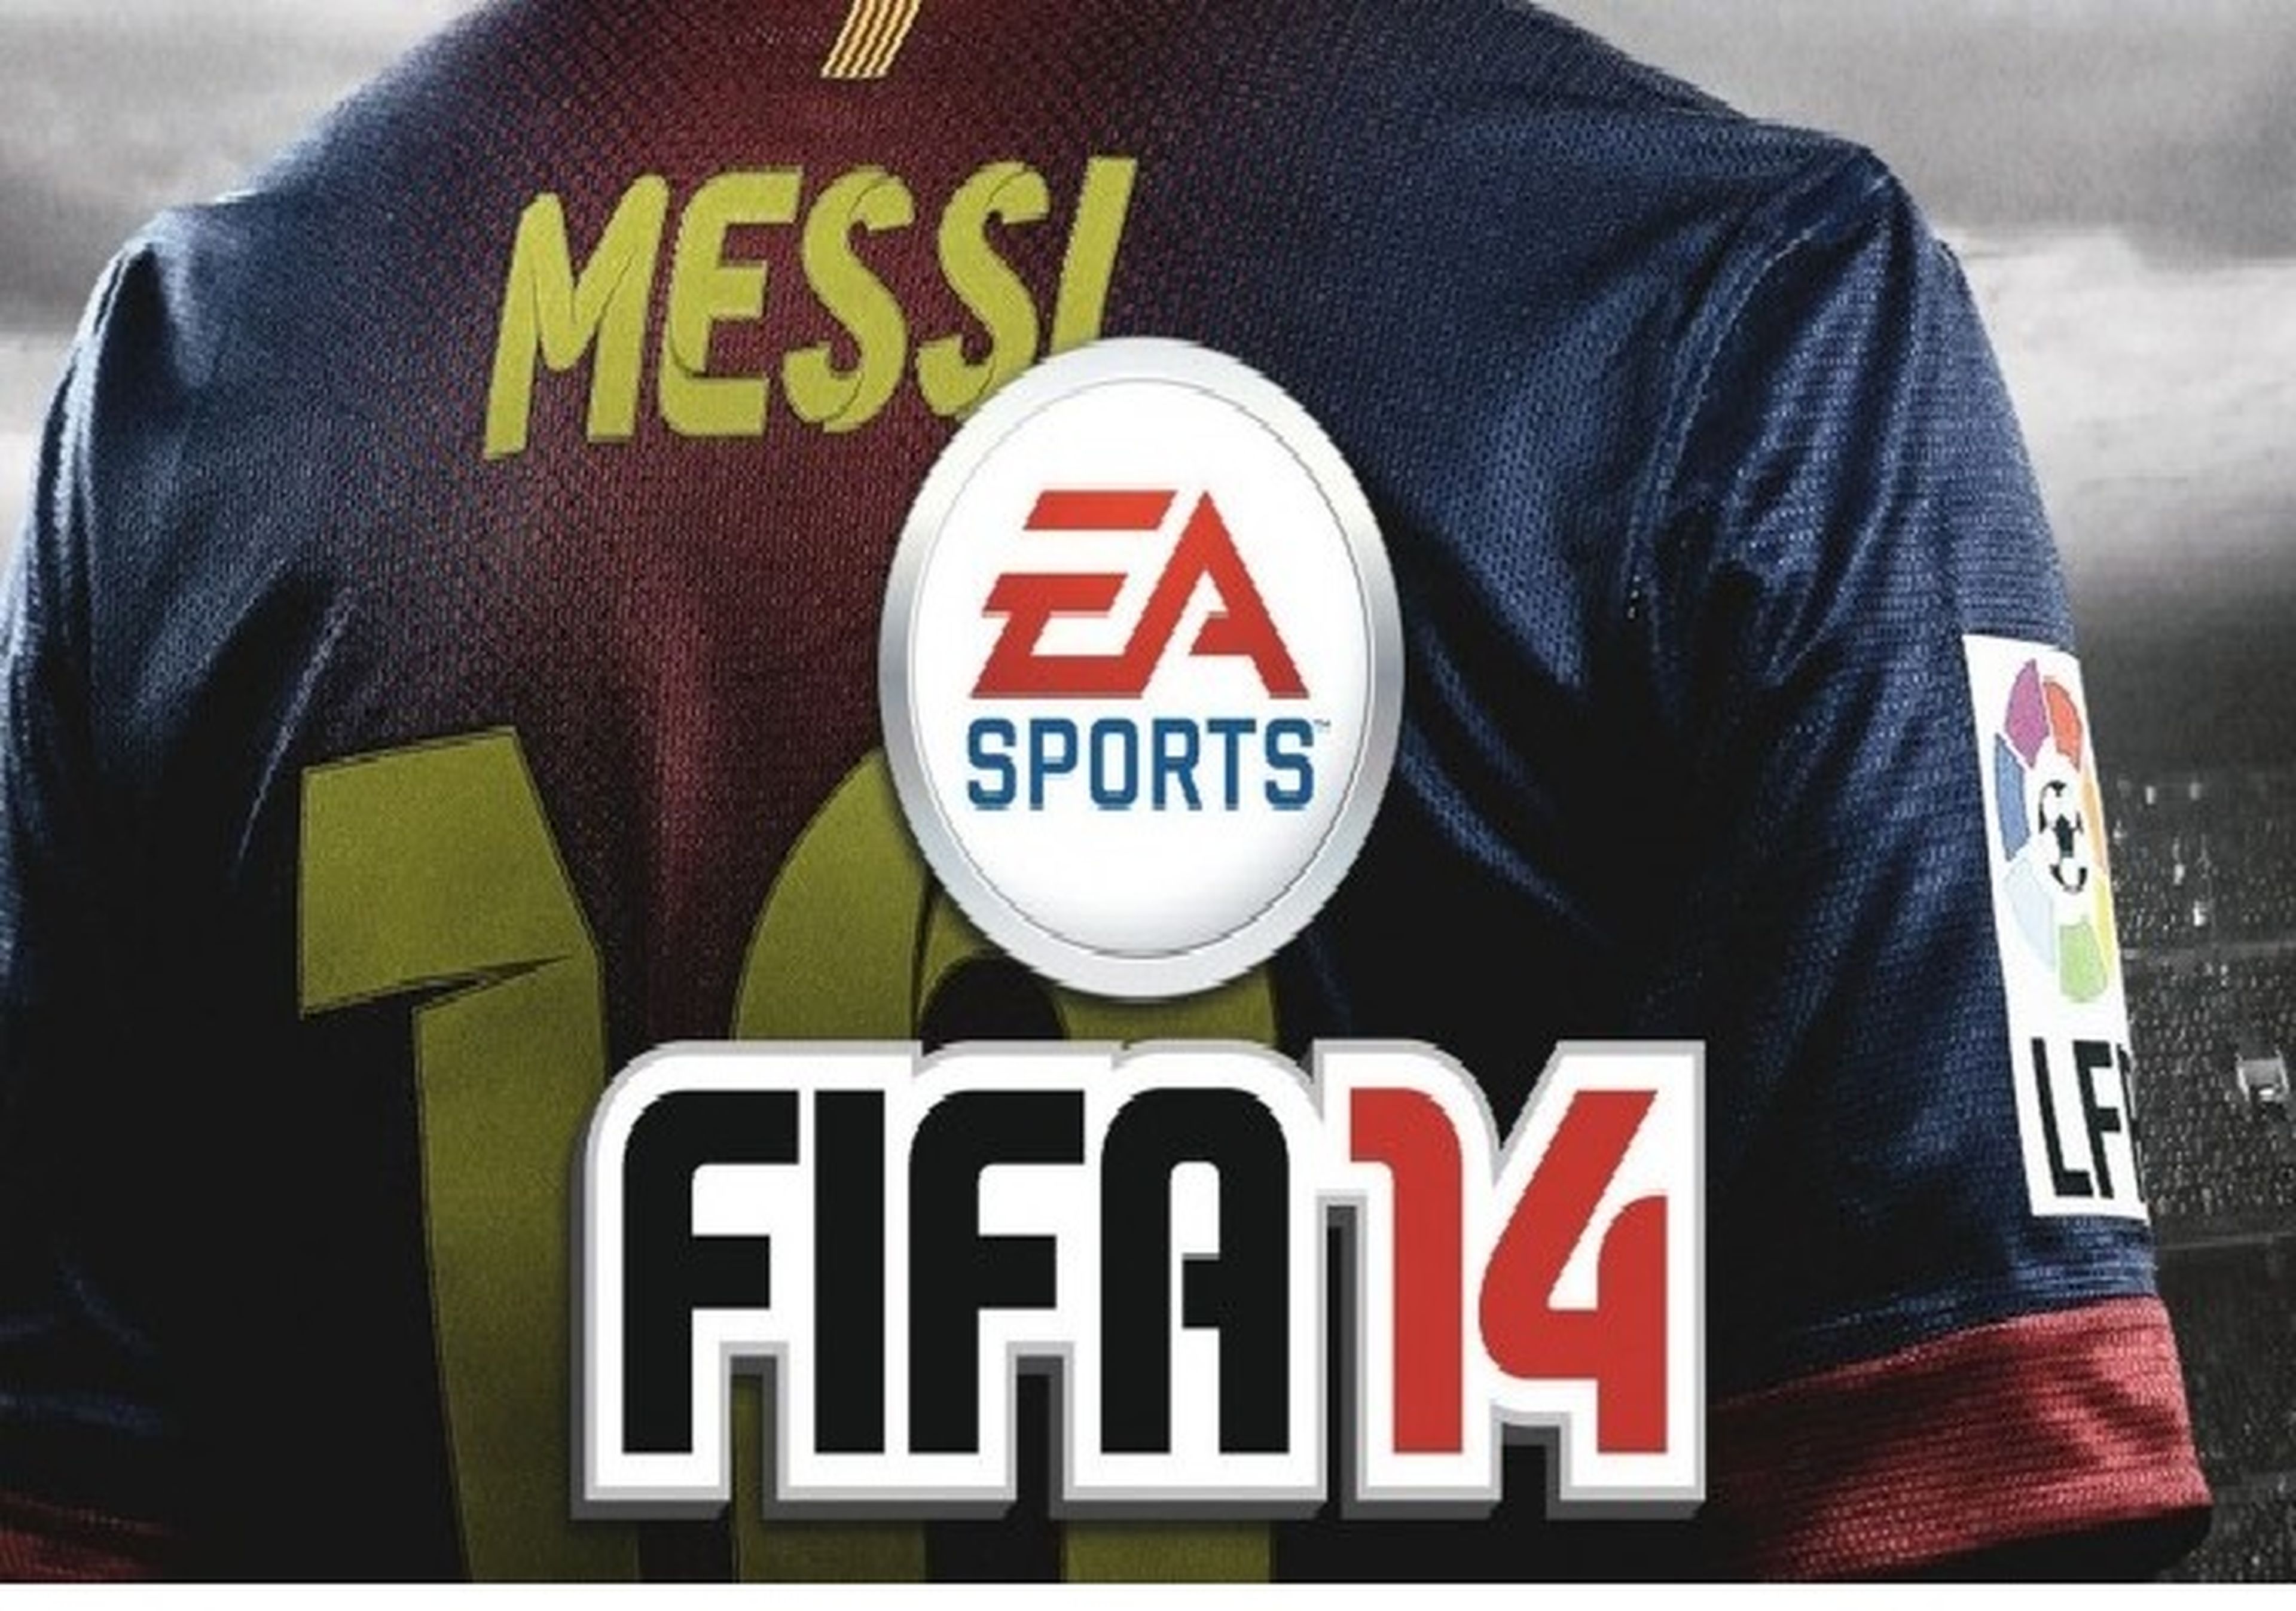 Xbox One regala FIFA 14 con cada reserva realizada